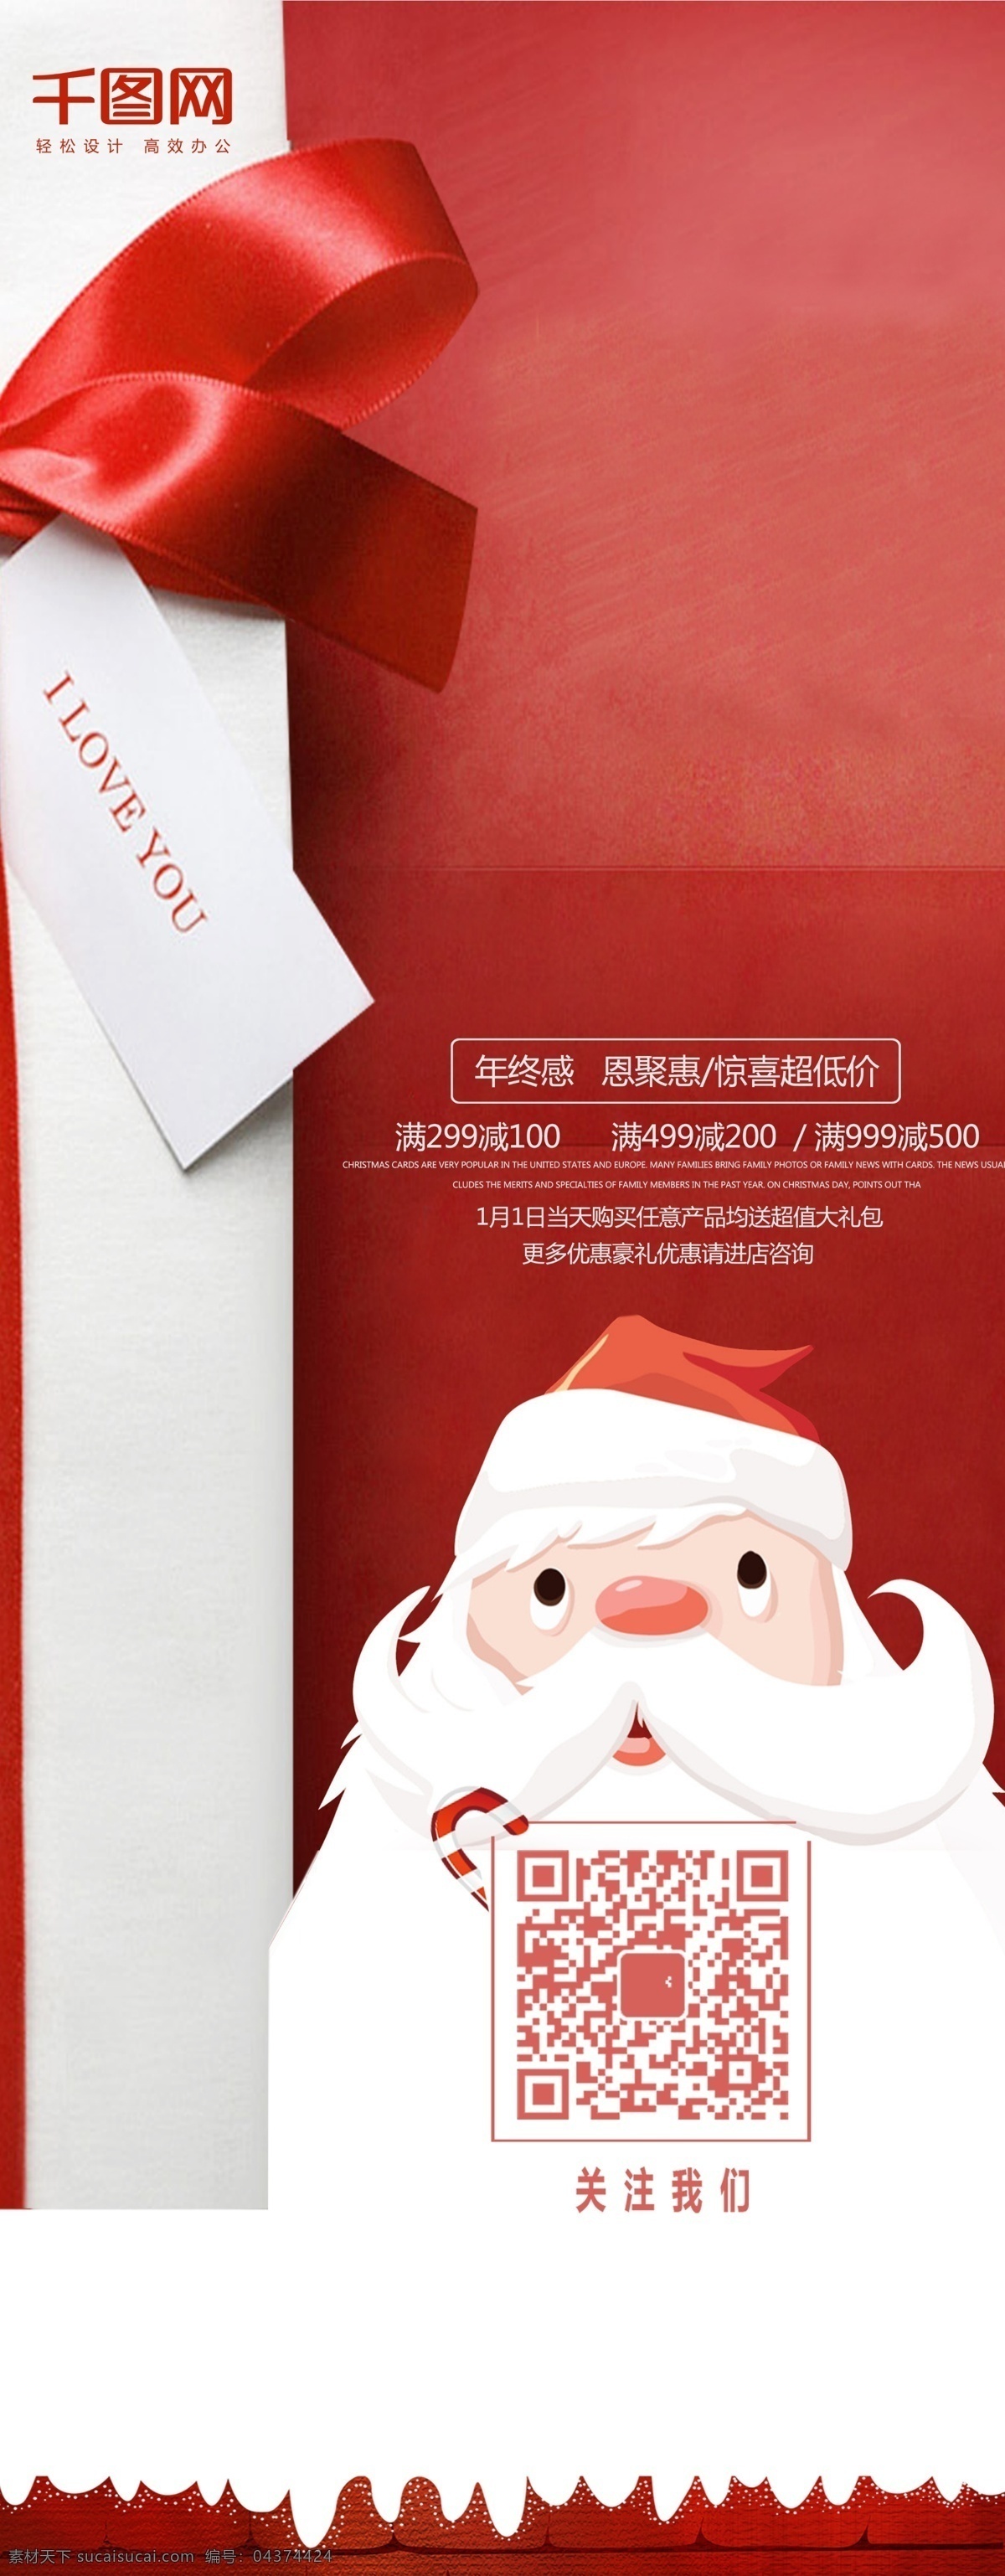 红色 简约 圣诞节 礼物 圣诞老人 促销 x 展架 psd素材 广告设计模版 简约大气 节日 商城招贴 圣诞节素材 圣诞礼物